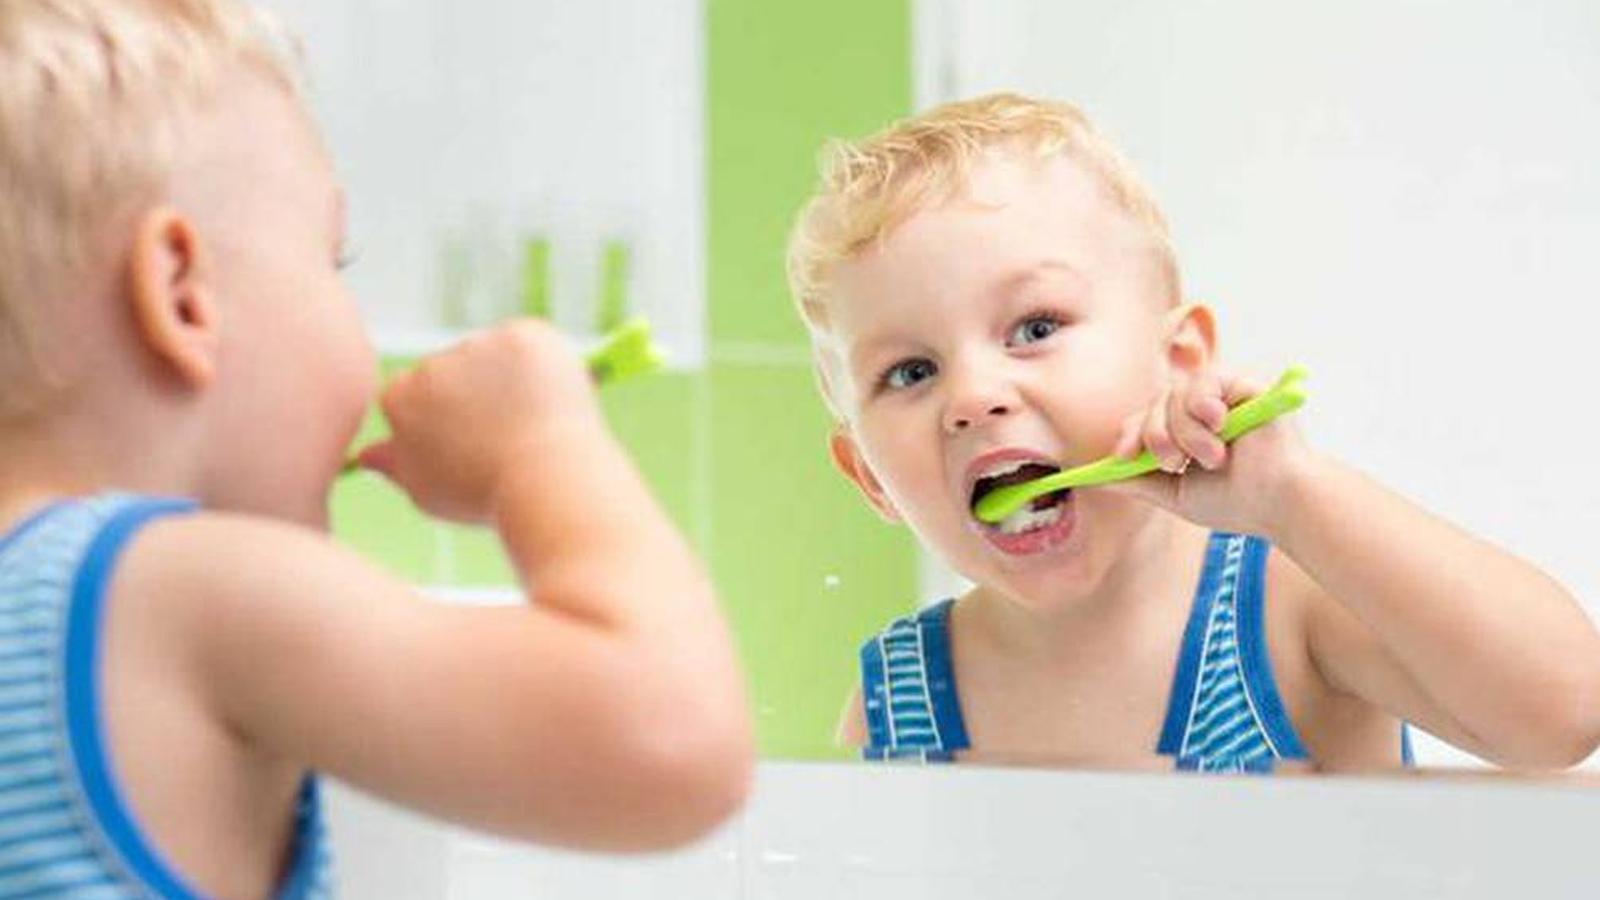 Cách làm trắng răng cho trẻ nhỏ 1 tuổi?
